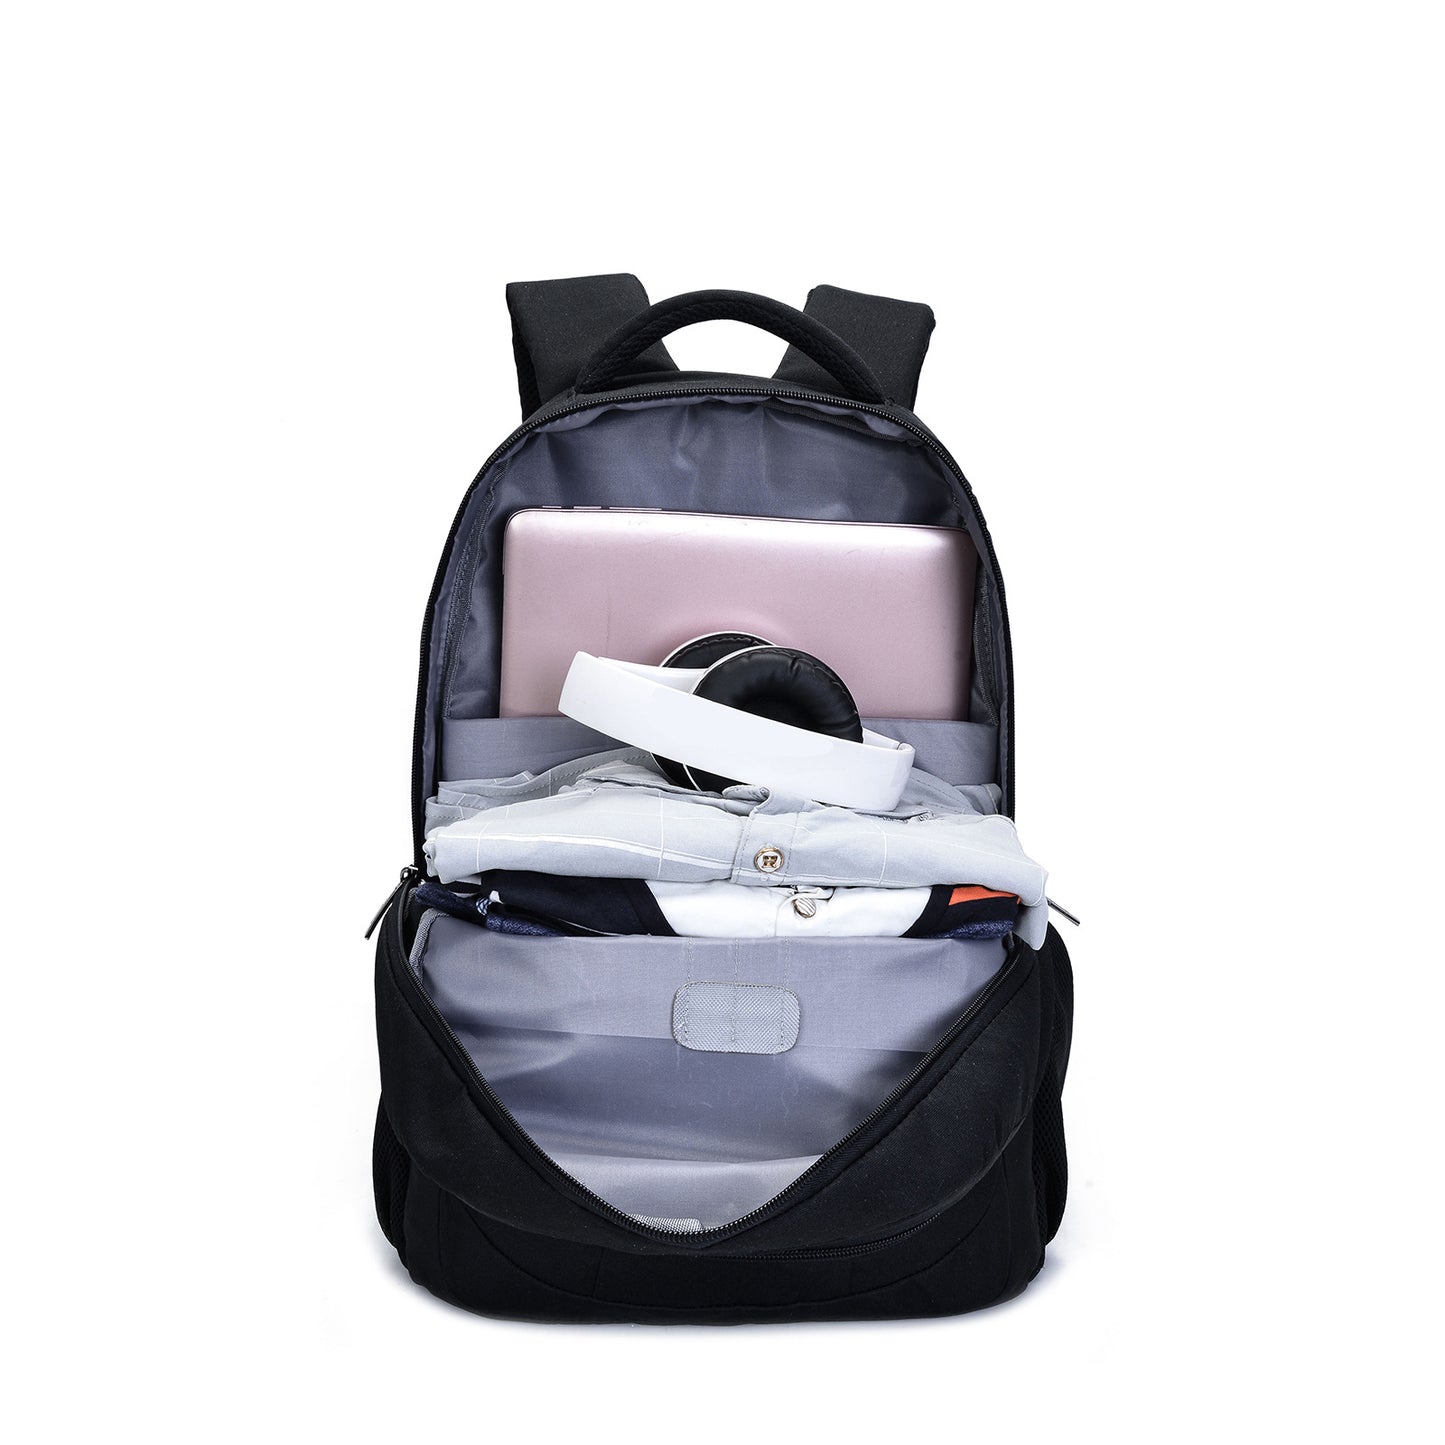 OSOCE S99 Backpack